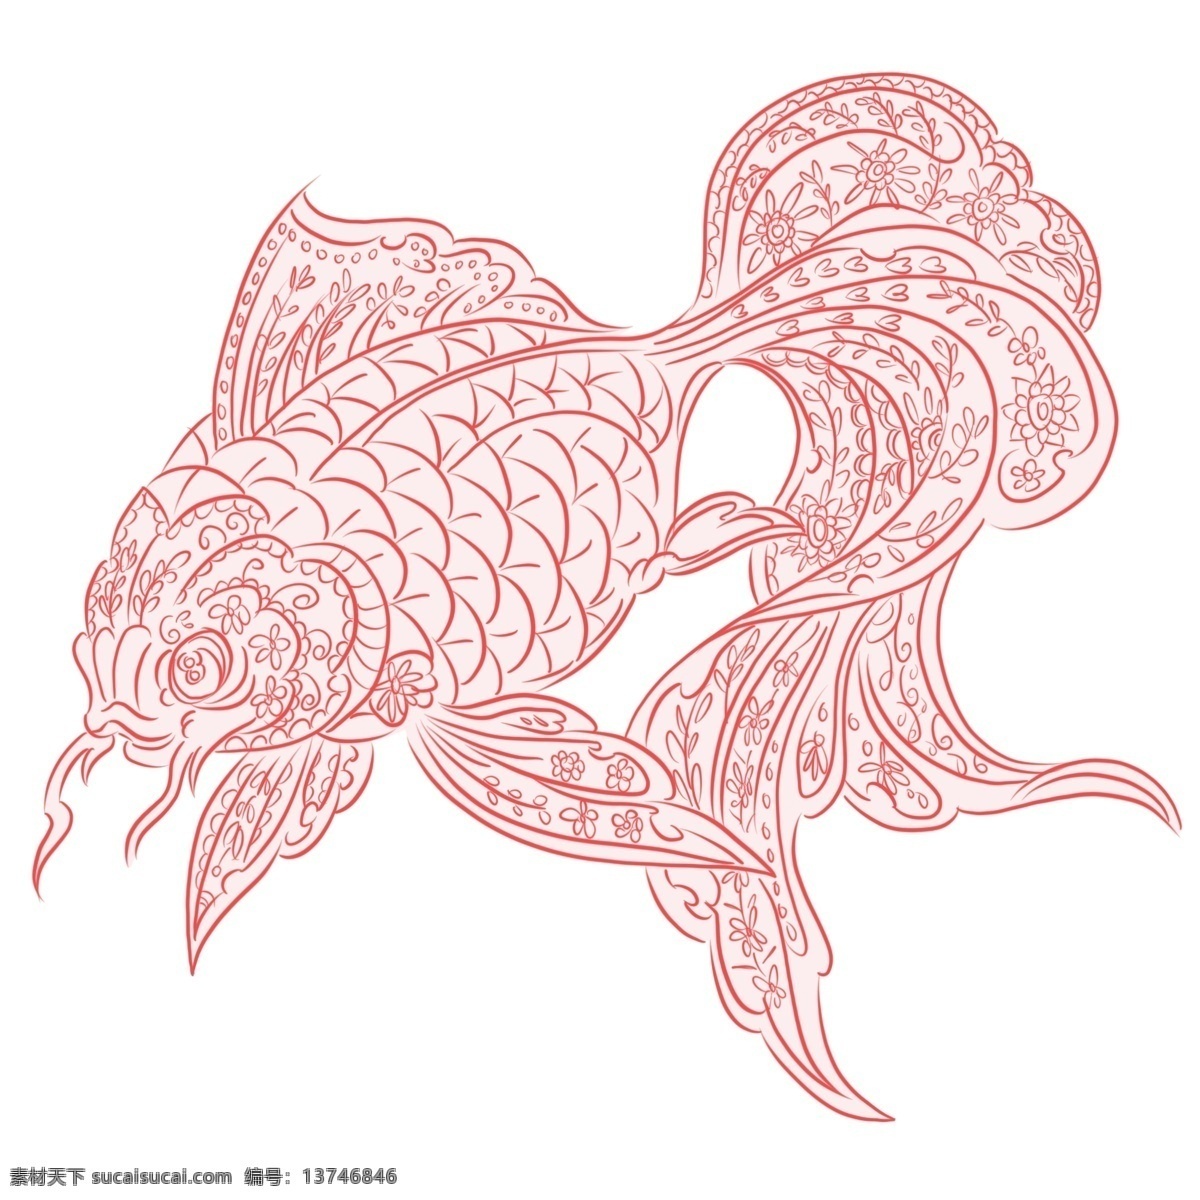 手绘 动物 中国 风 金鱼 手绘动物 手绘金鱼 中国风 中国风金鱼 红色金鱼